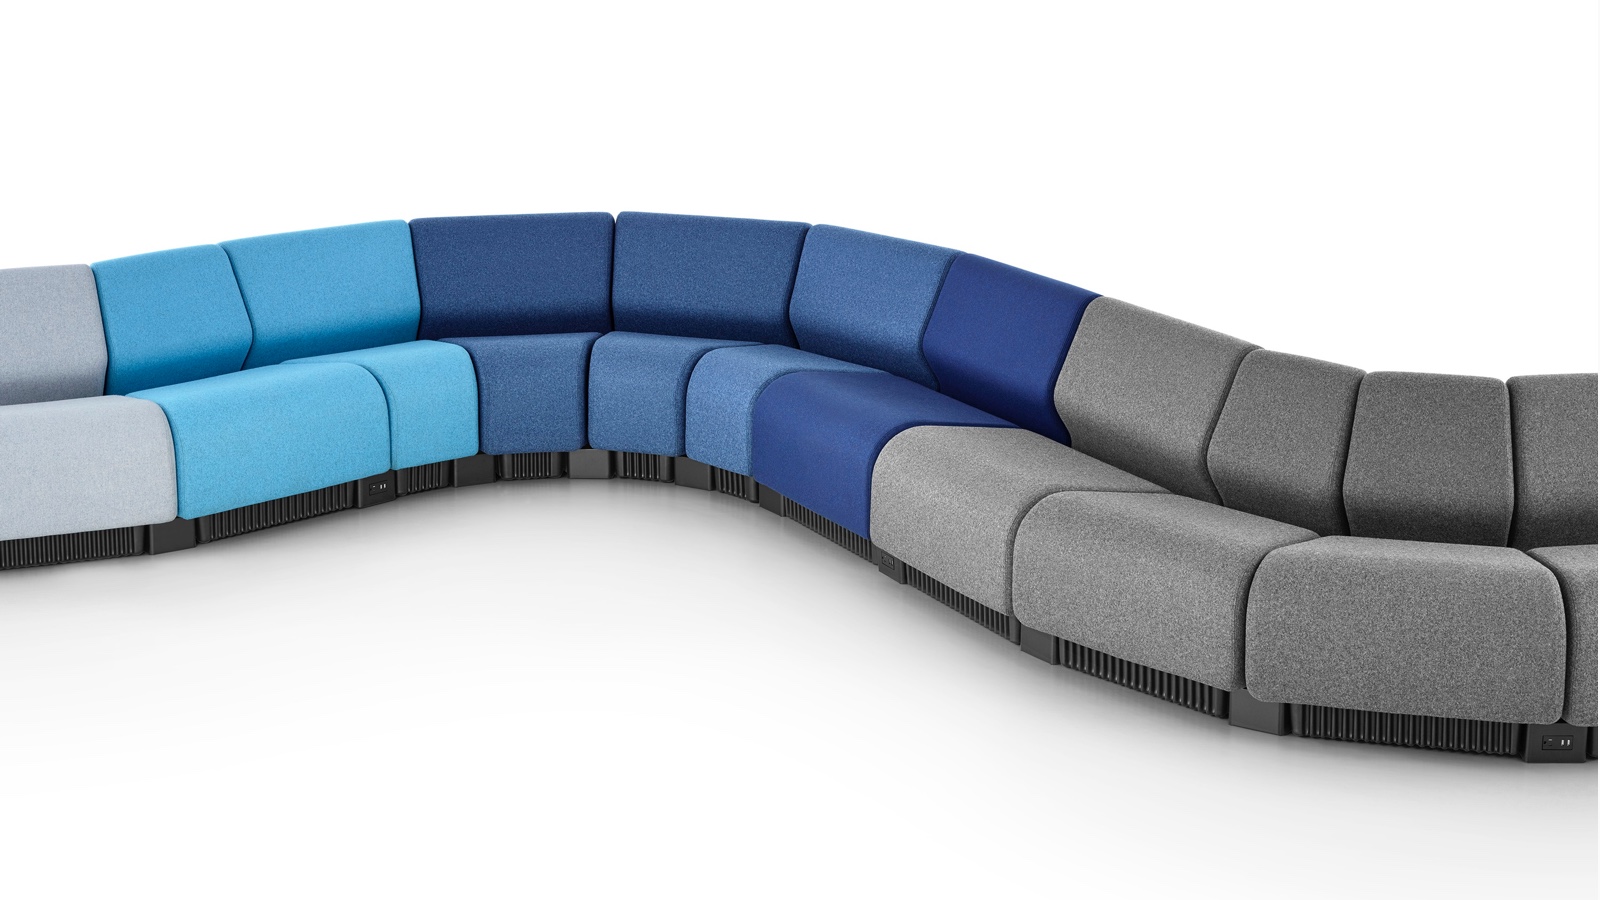 Configuração de assentos em serpentina formados com módulos de assentos modulares Chadwick em tons de cinza e azul.